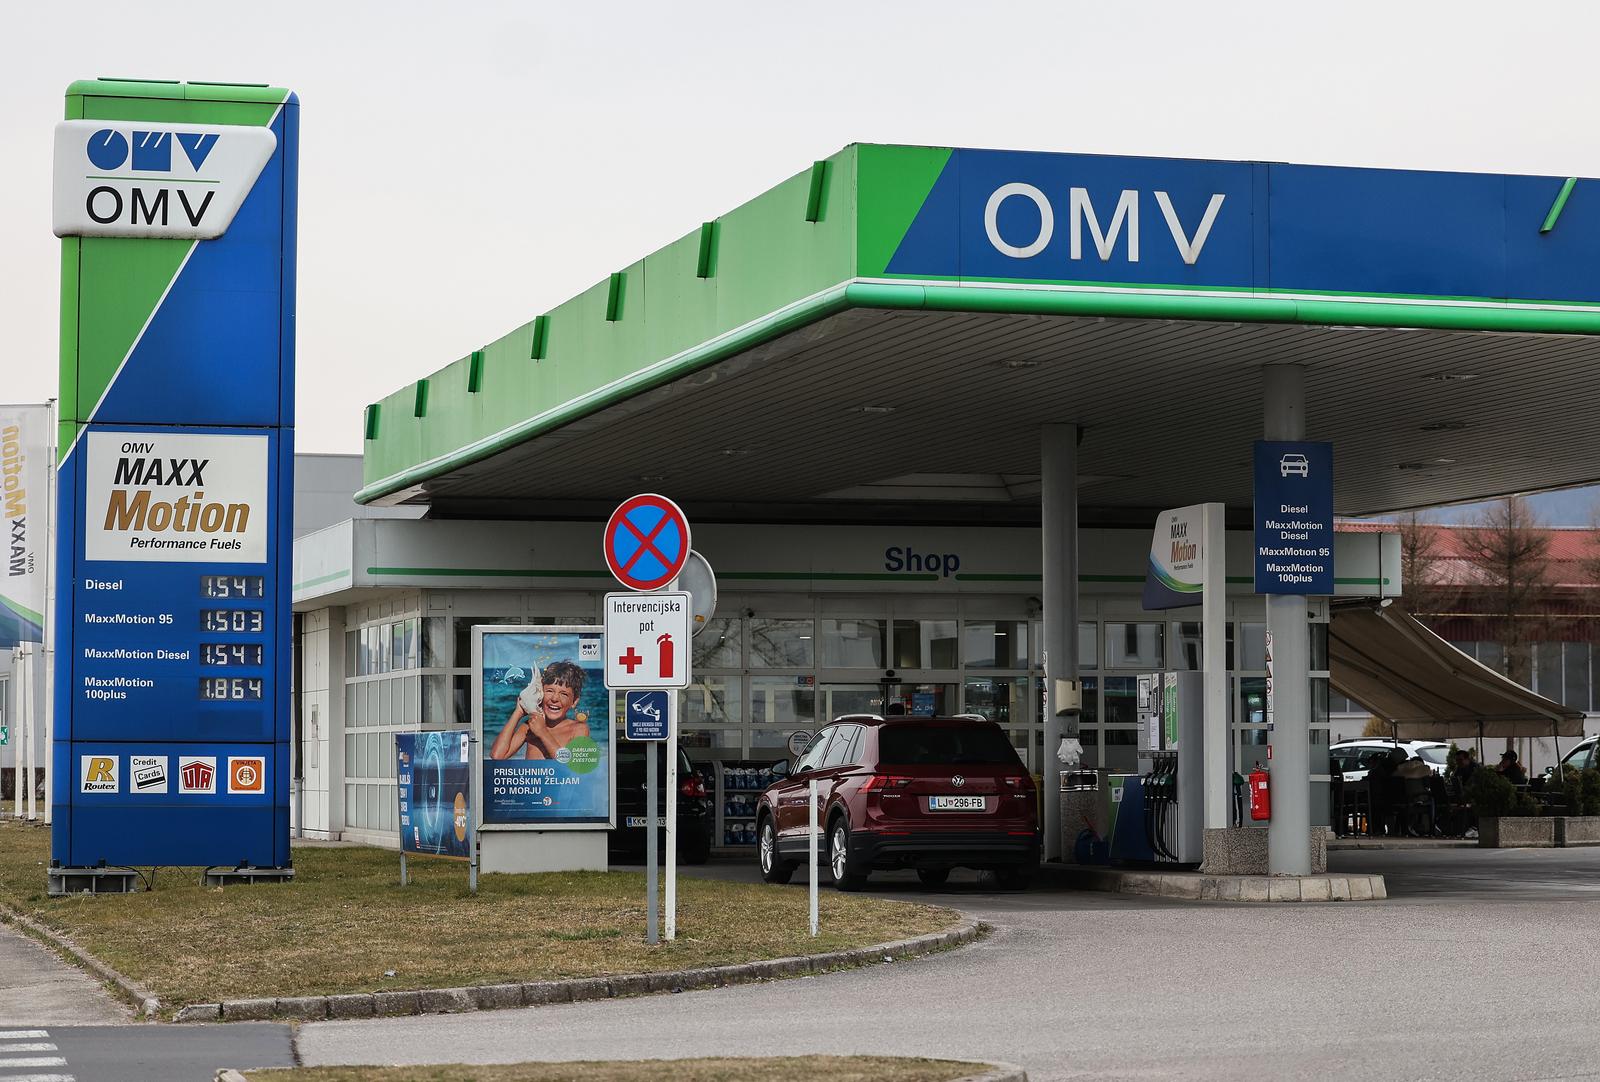 15.03.2022., Brezice, Slovenija -  Benzinska postaja OMW i cijene goriva u susjednoj Sloveniji. Photo: Marko Prpic/PIXSELL